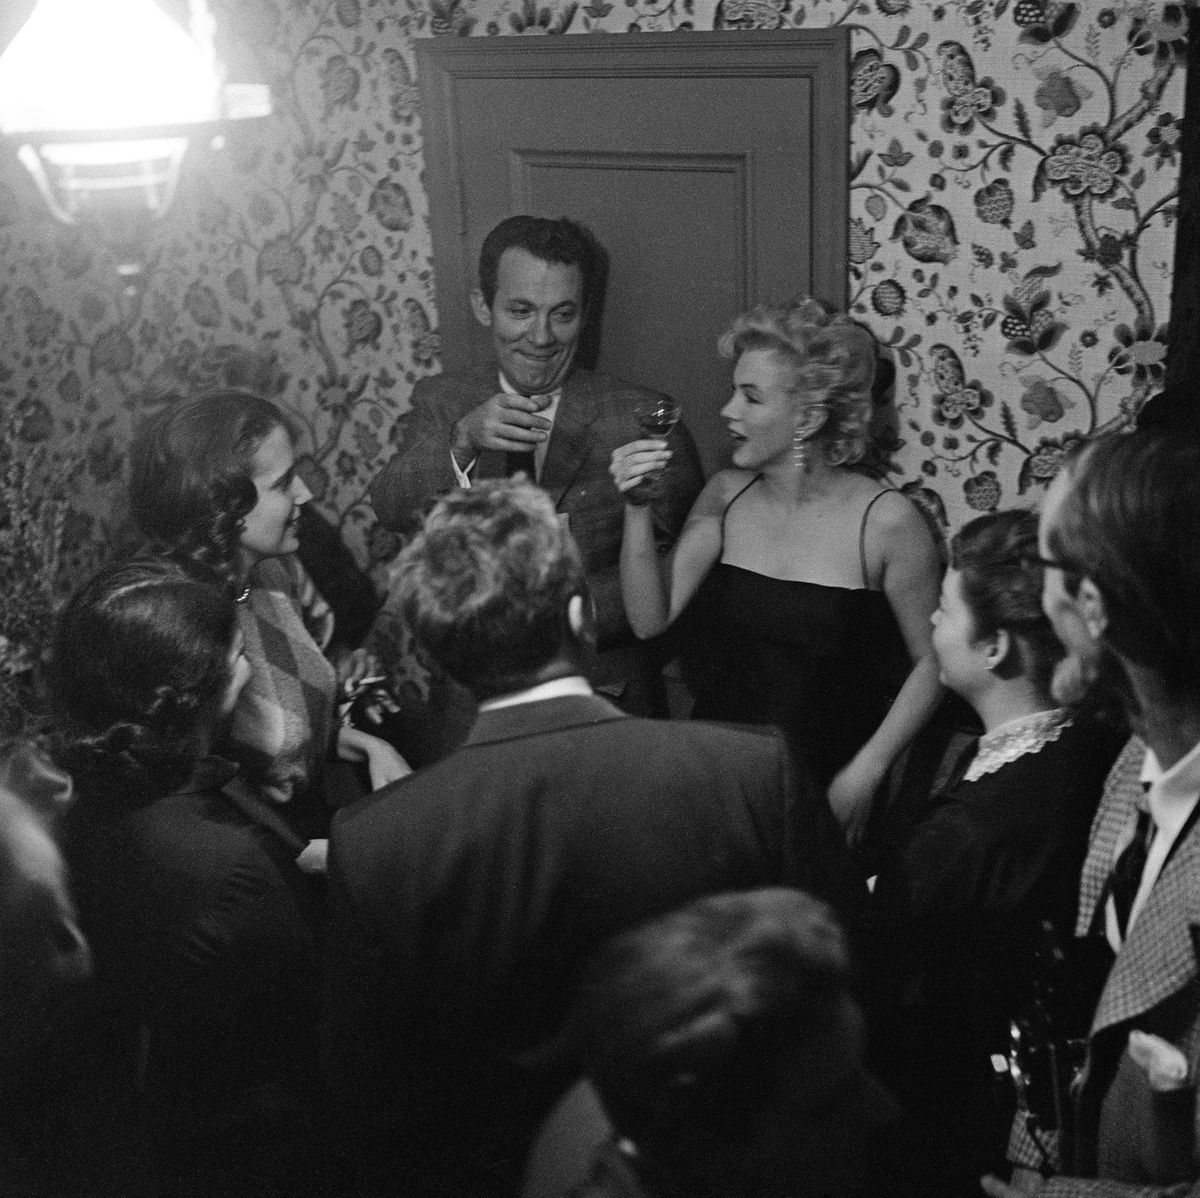 מרילין מונרו מחזיקה כוס אלכוהול קטנה, מוקפת אנשים במסיבה